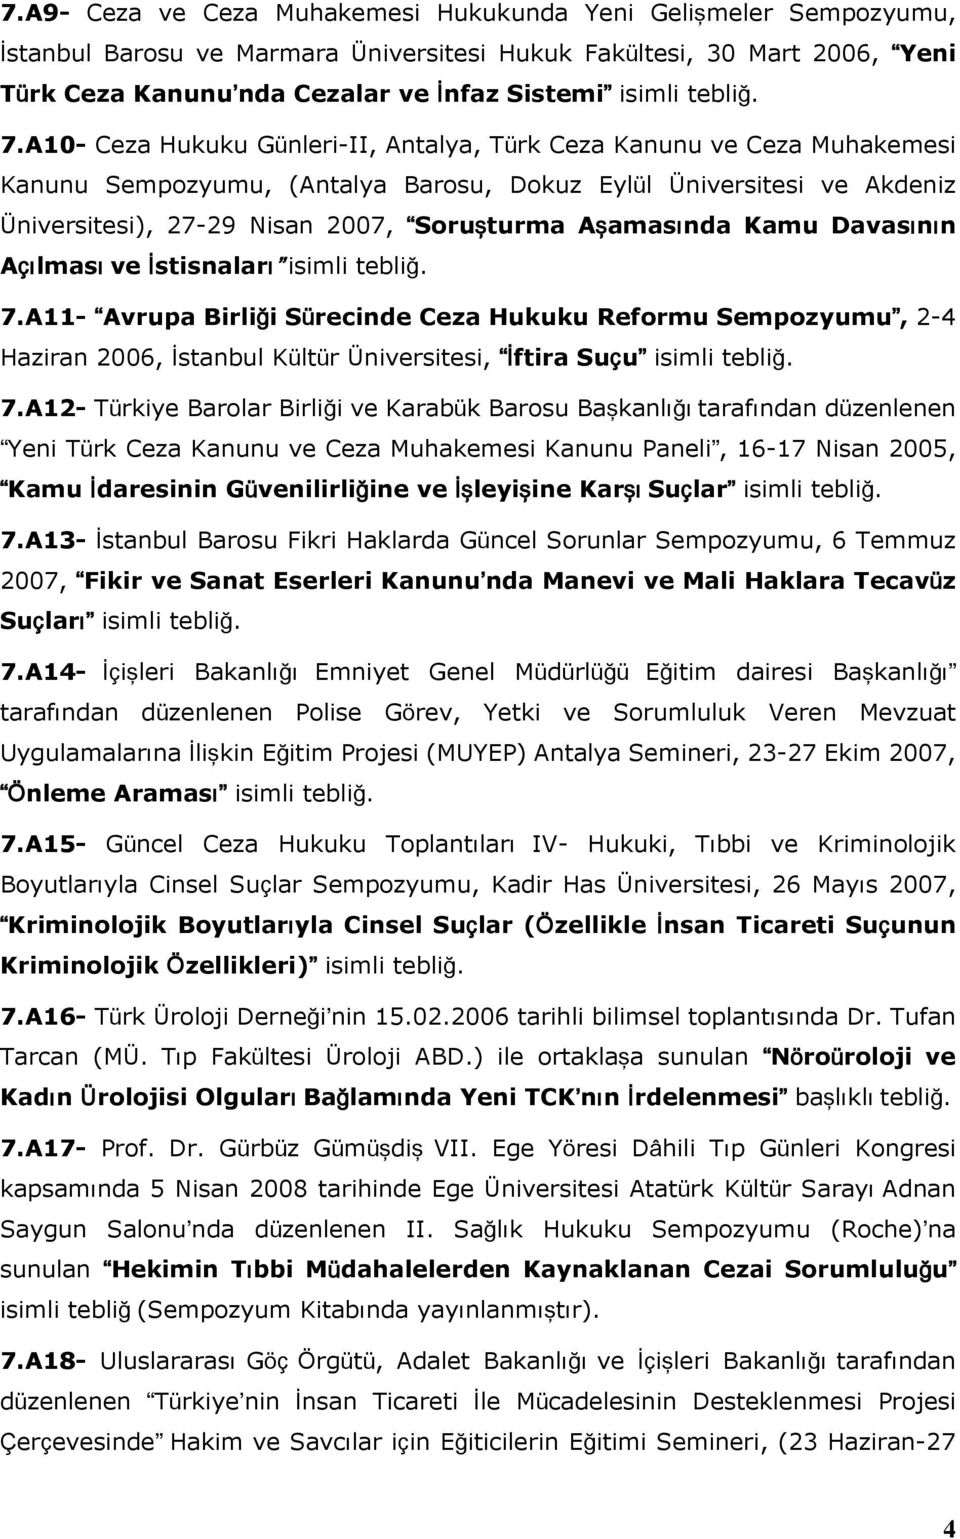 A10- Ceza Hukuku Günleri-II, Antalya, Türk Ceza Kanunu ve Ceza Muhakemesi Kanunu Sempozyumu, (Antalya Barosu, Dokuz Eylül Üniversitesi ve Akdeniz Üniversitesi), 27-29 Nisan 2007, Soruşturma